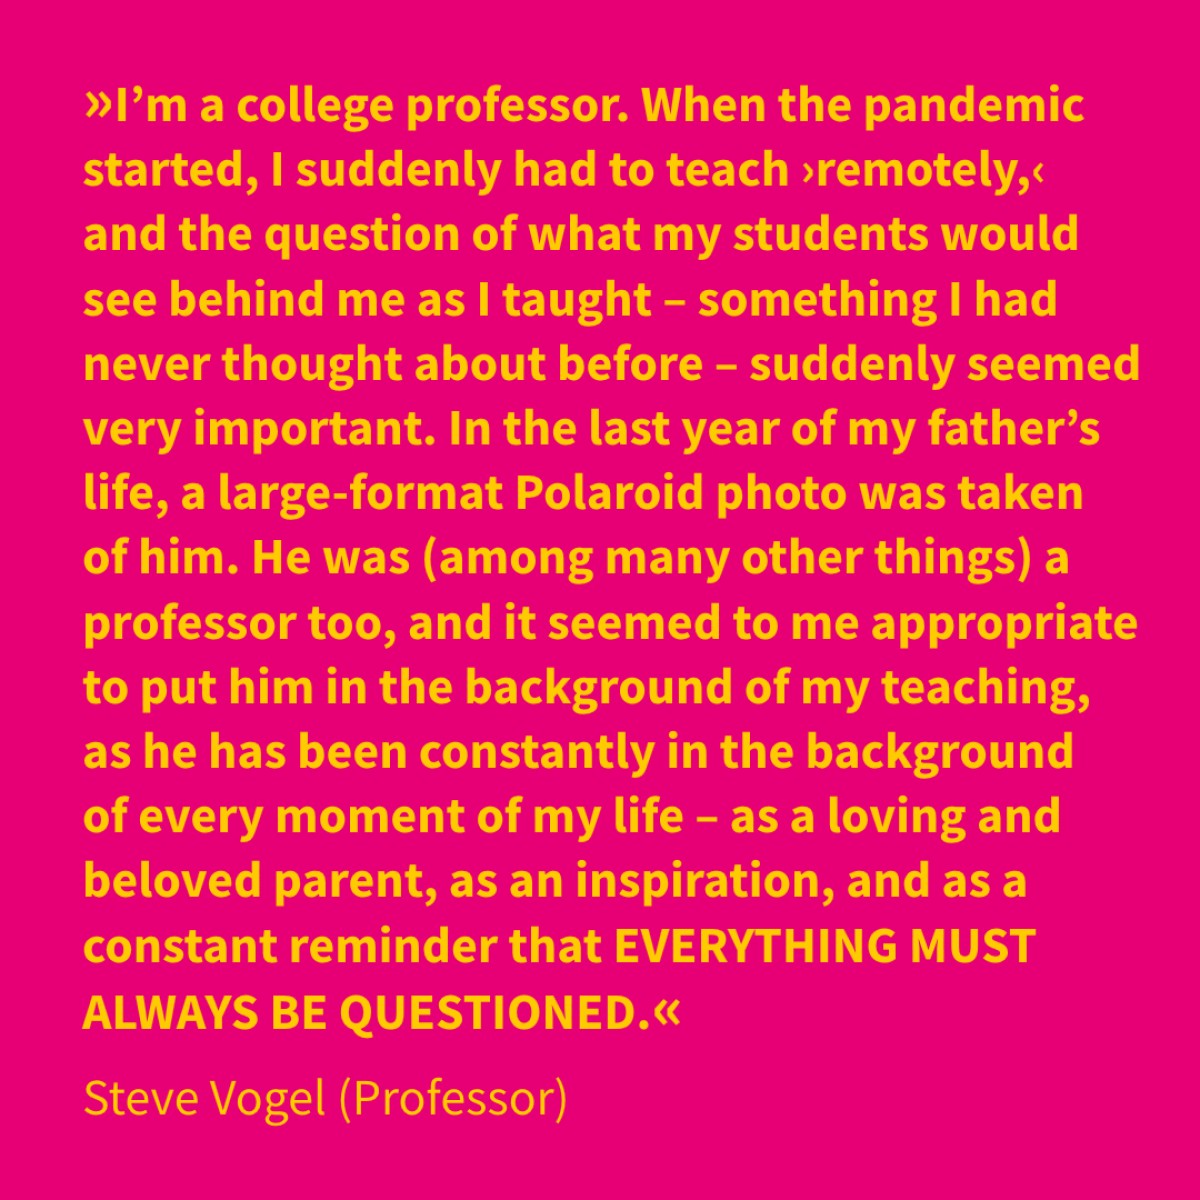 Steve Vogel (Professor)